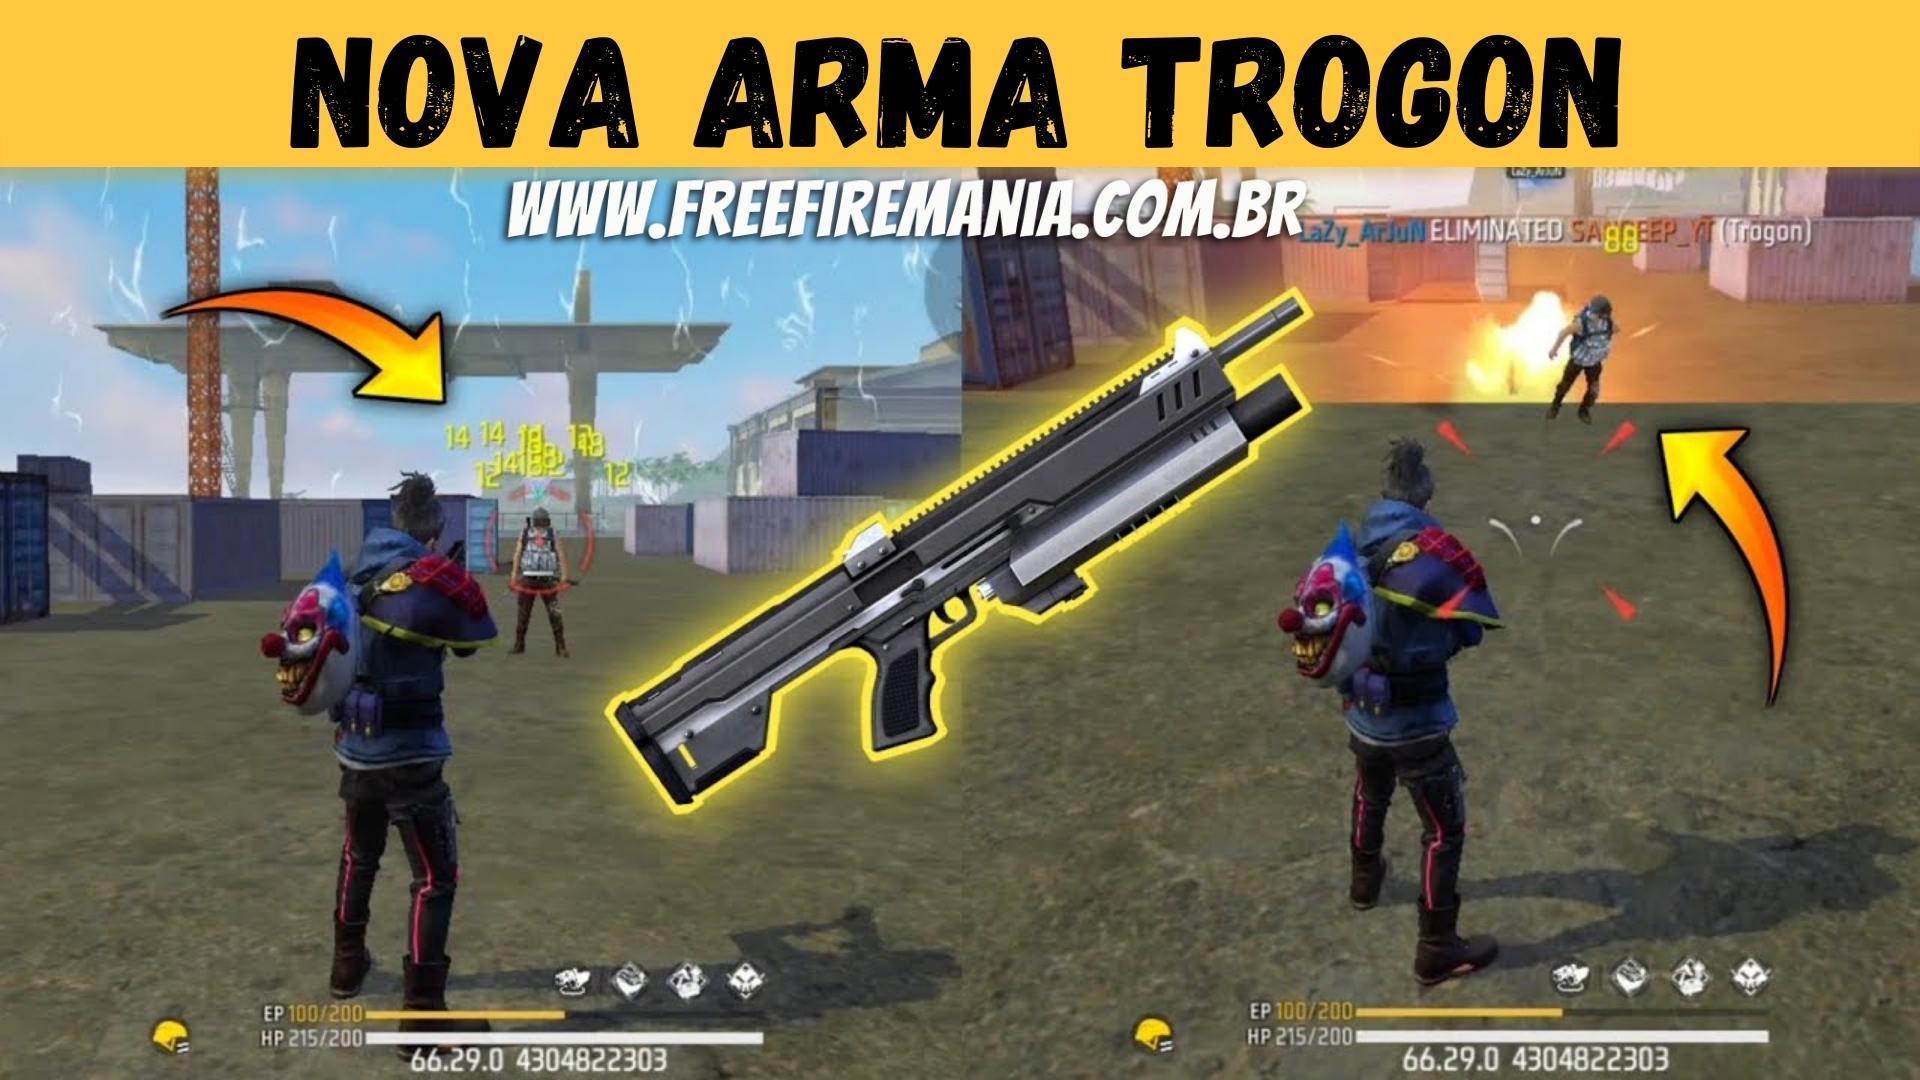 Nova arma Free Fire: Trogon dispara munição de Espingarda e também Lança-Granadas